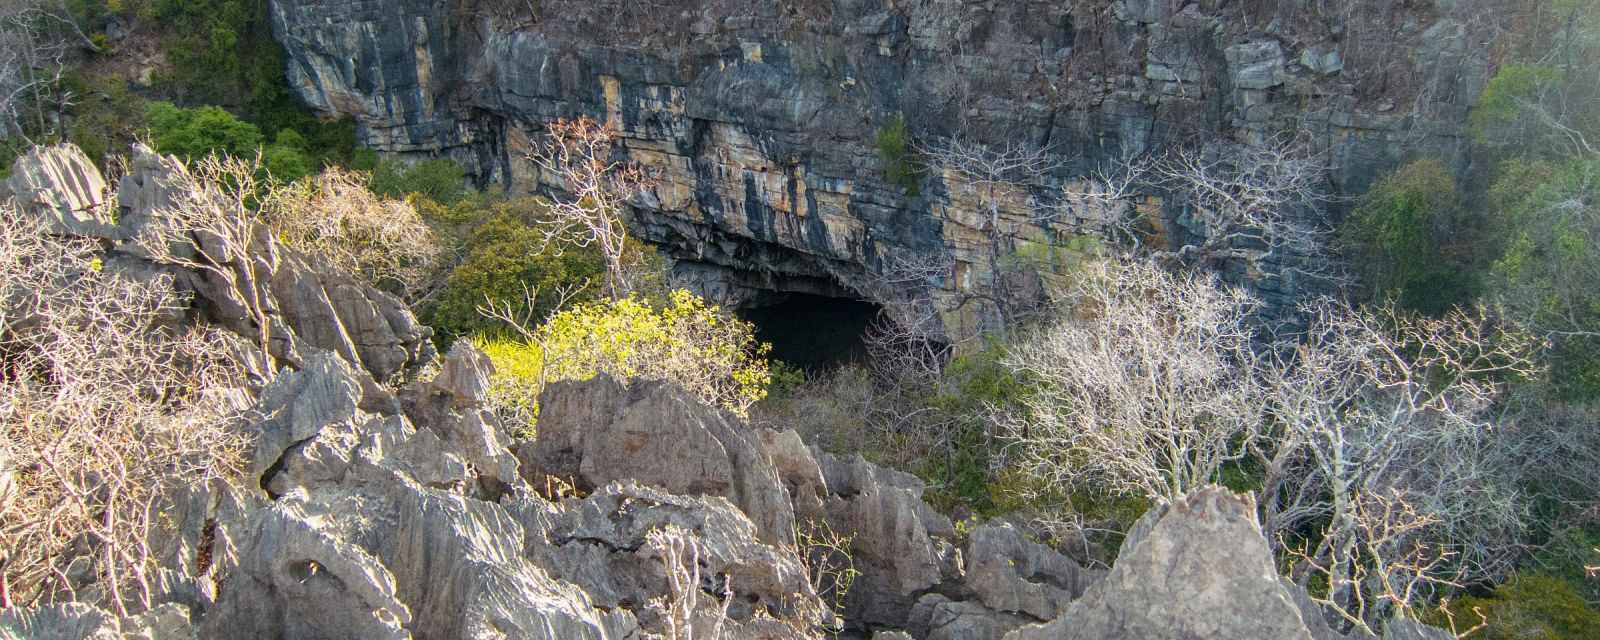 Ankarana Caves in the Ankarana Special Reserve